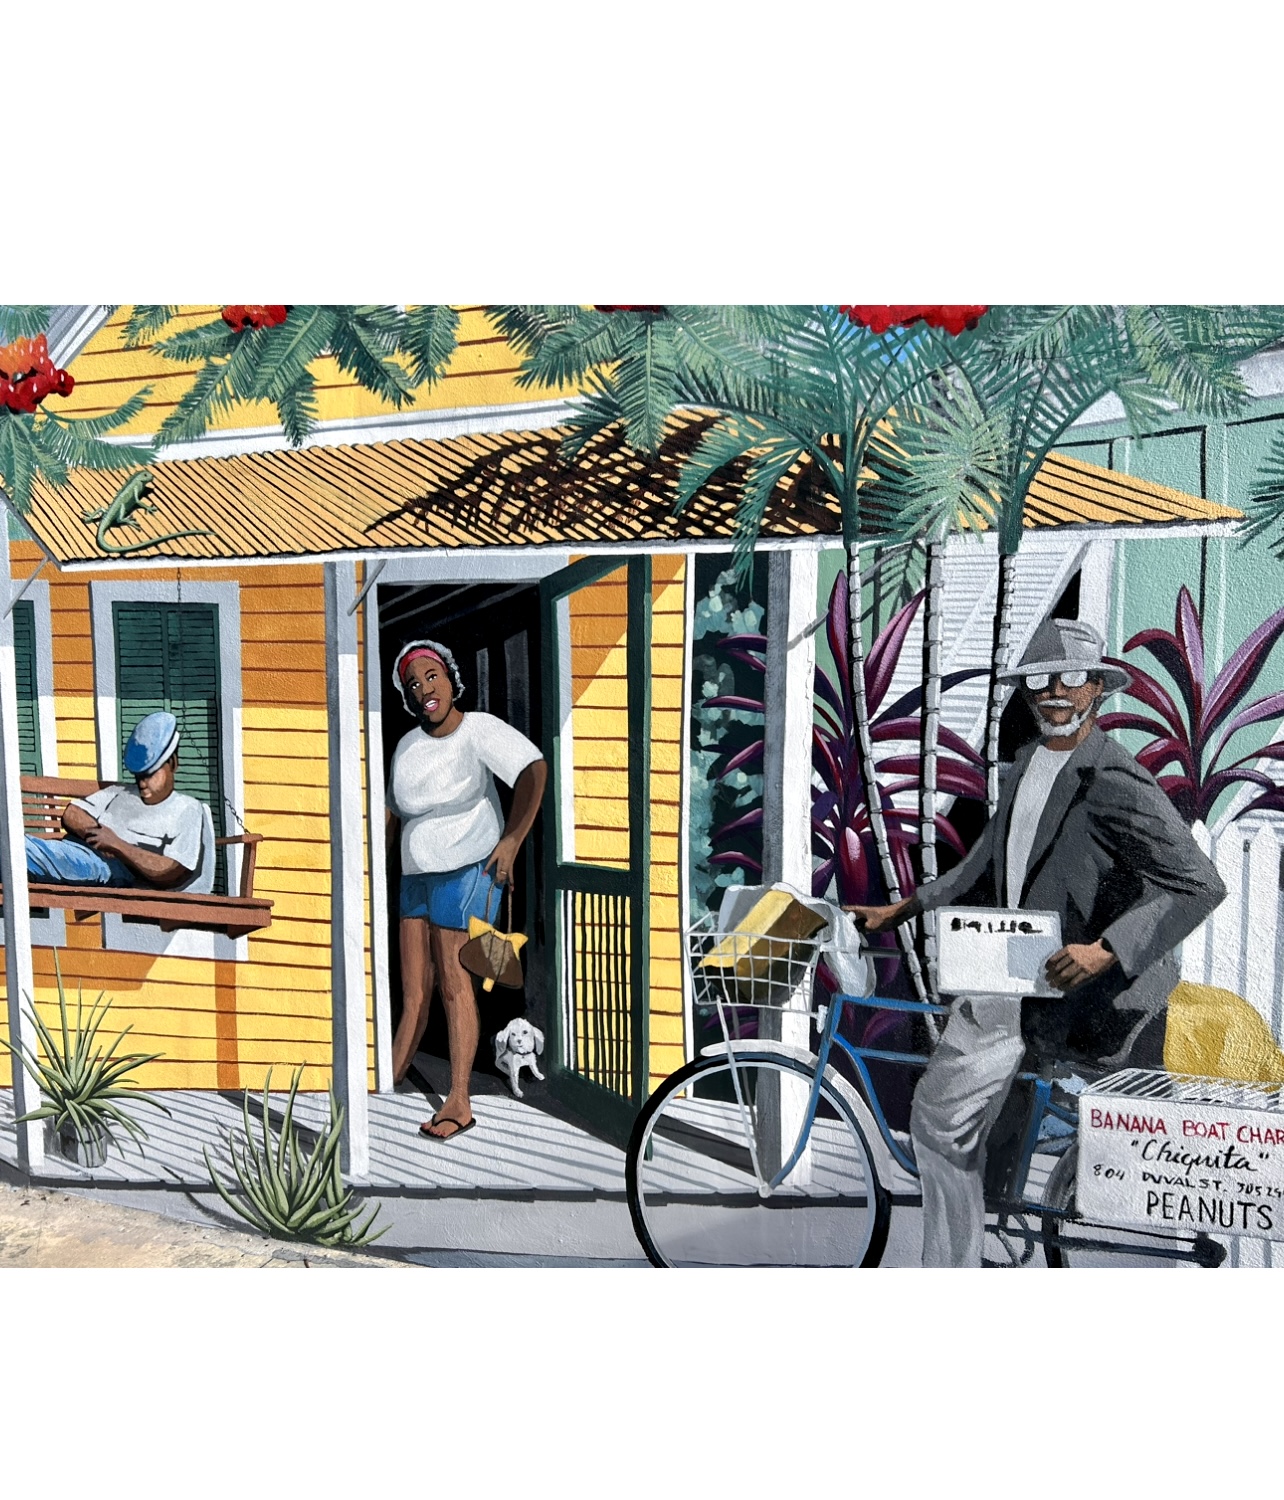 Une peinture vibrante représentant un homme à vélo devant une maison jaune.